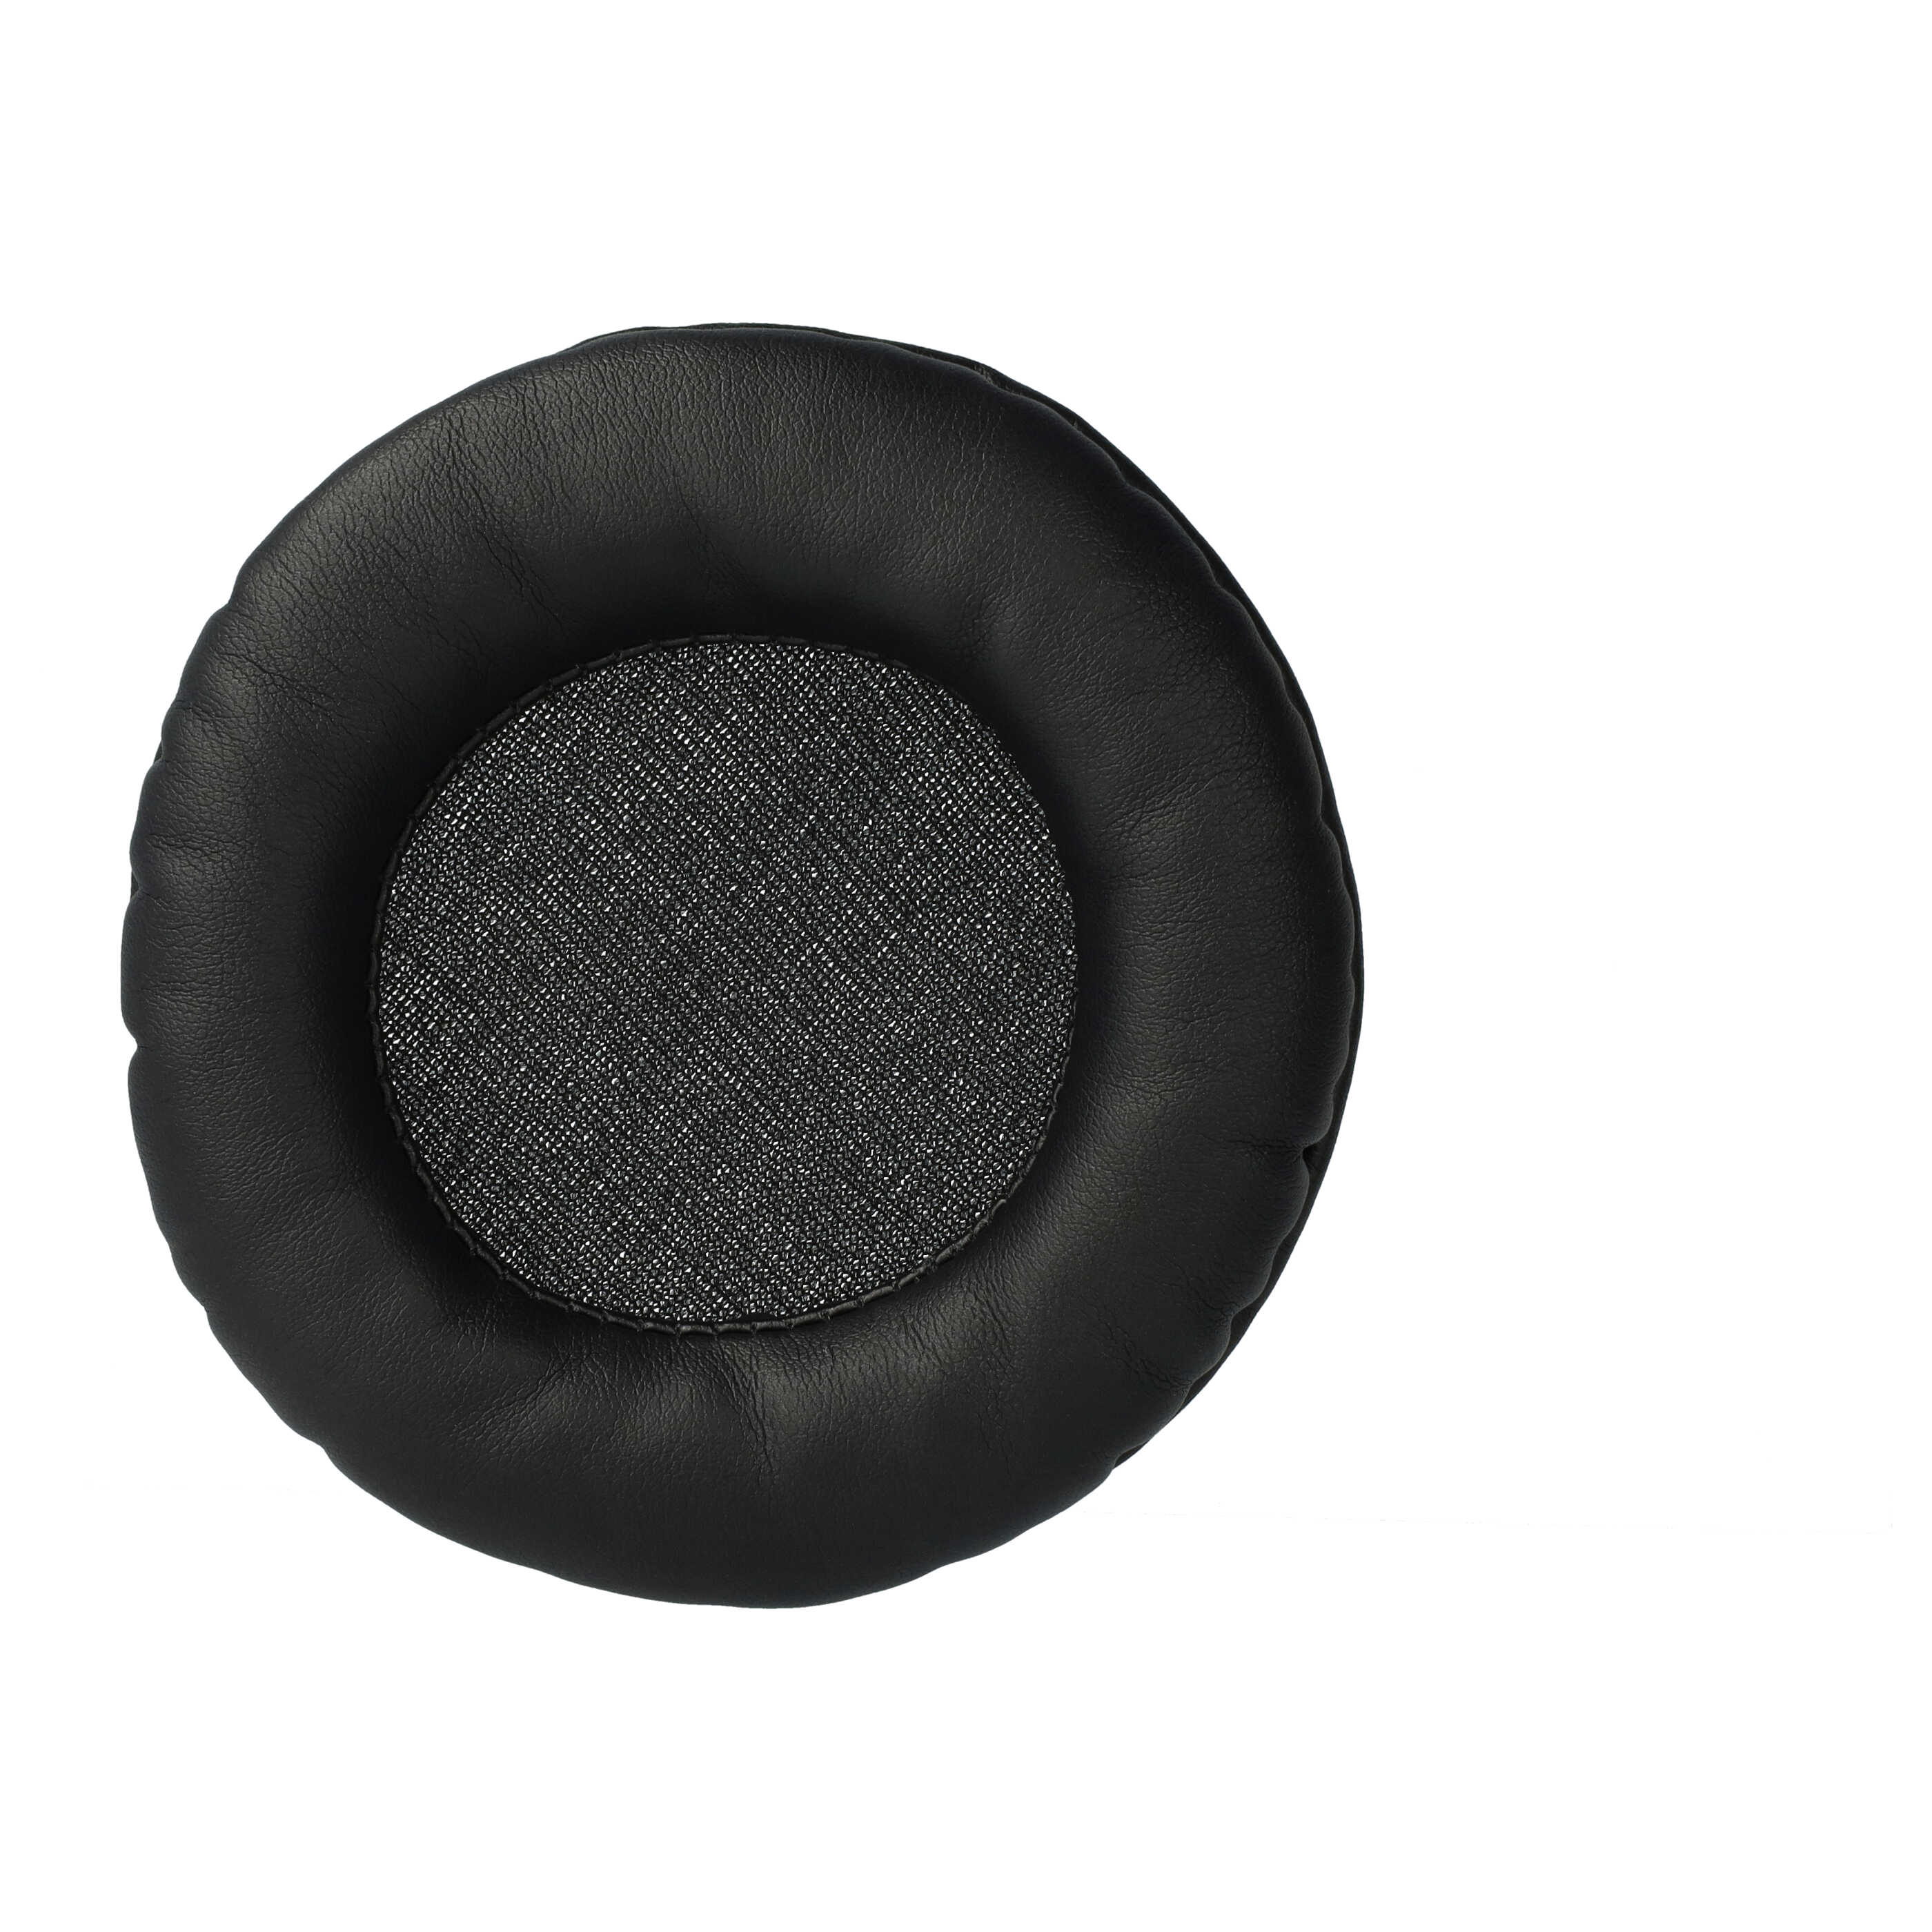 2x Poduszki do słuchawek RP-DH1200 - pady z pianką Memory, poliuretan / pianka, grub. 17 mm, czarny